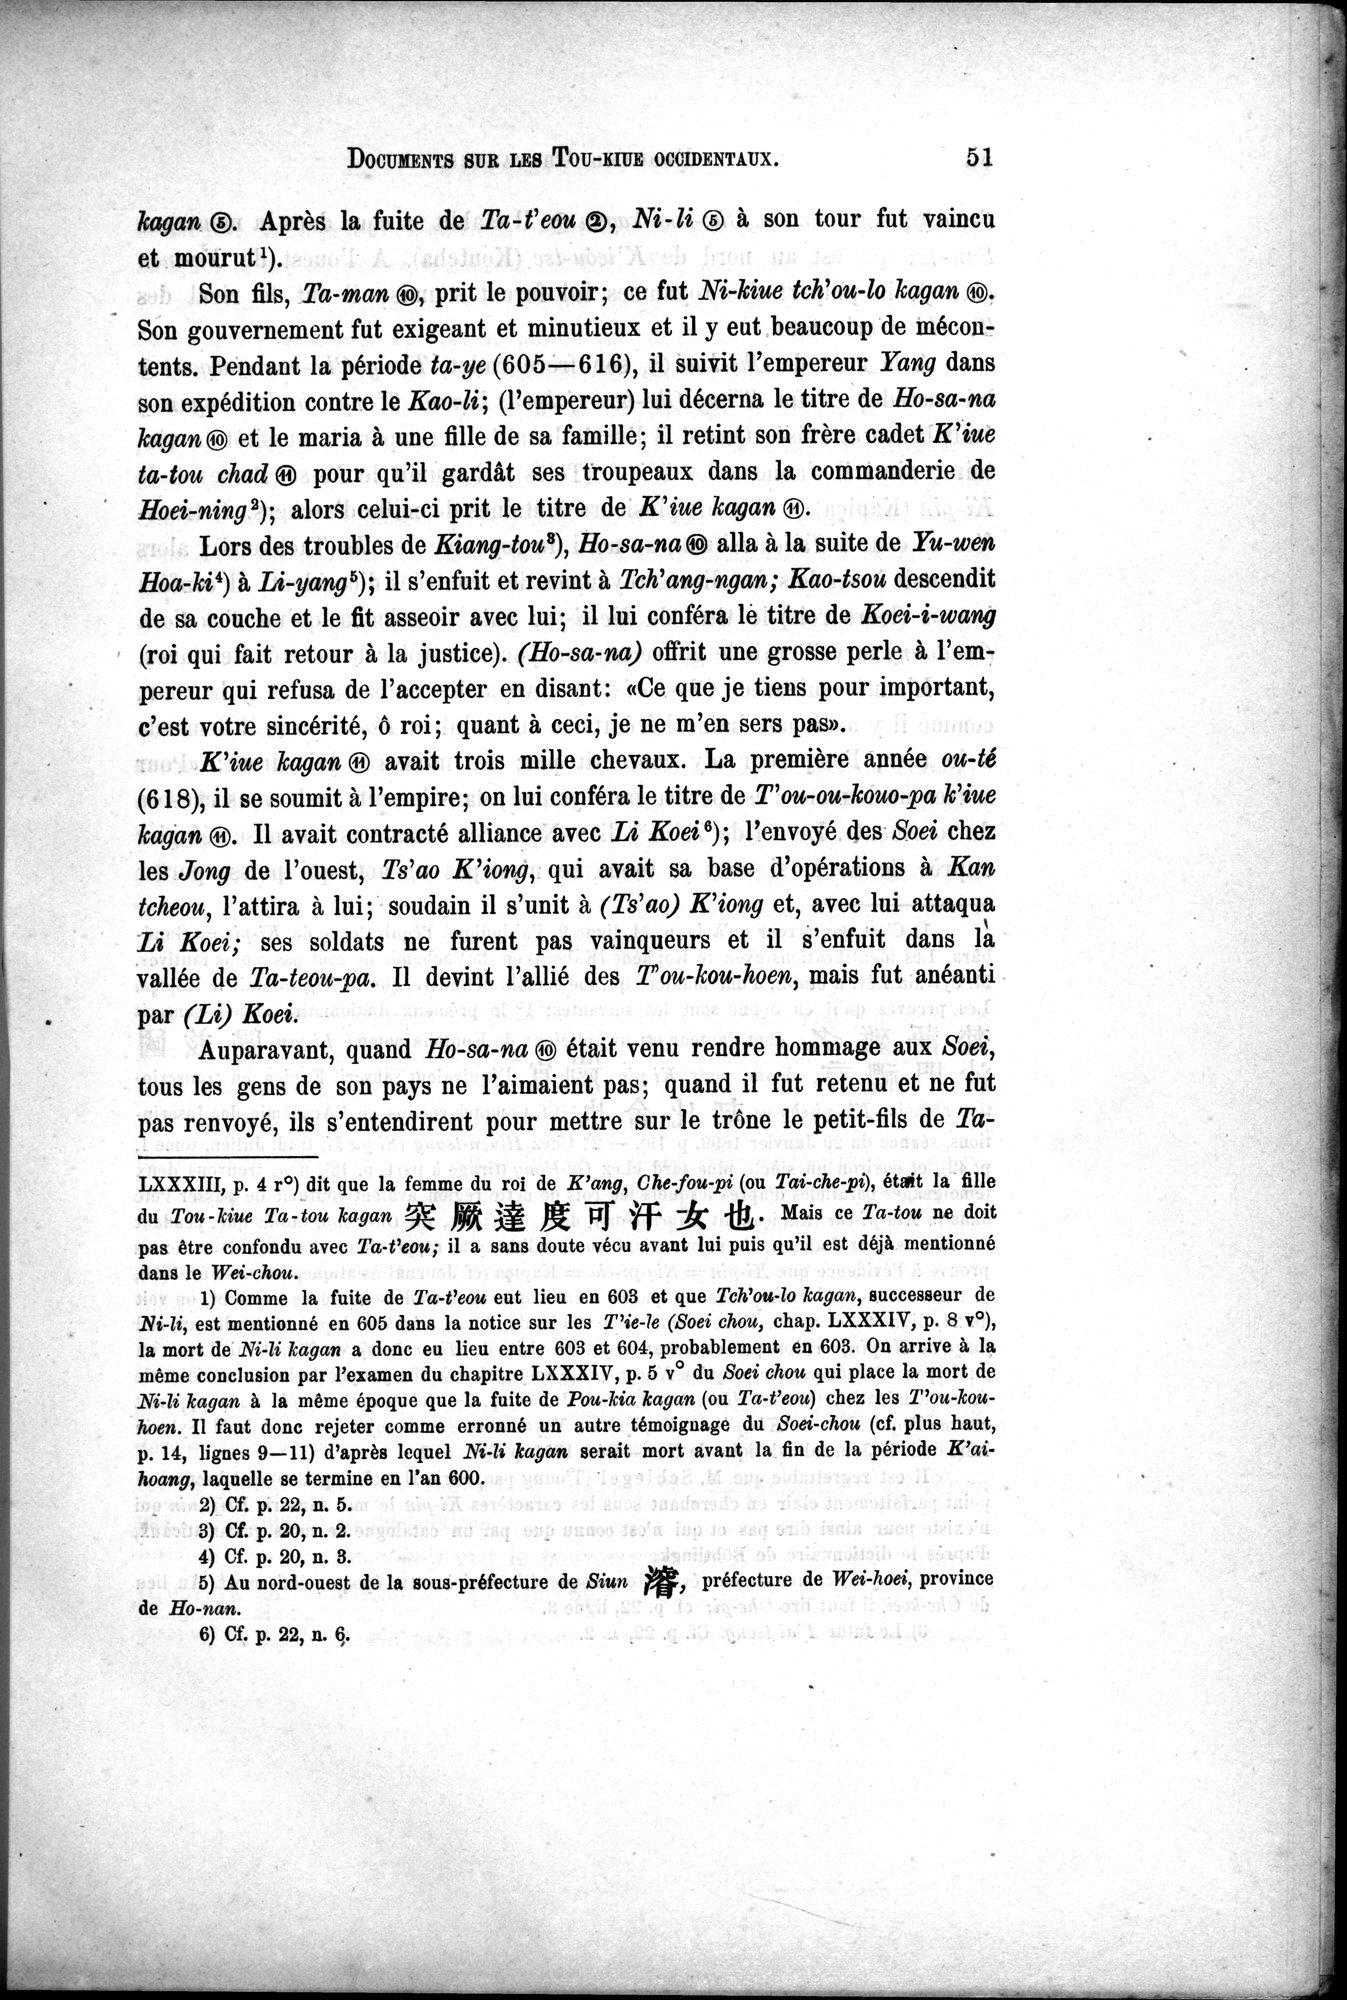 Documents sur les Tou-kiue (Turcs) occidentaux : vol.1 / Page 61 (Grayscale High Resolution Image)